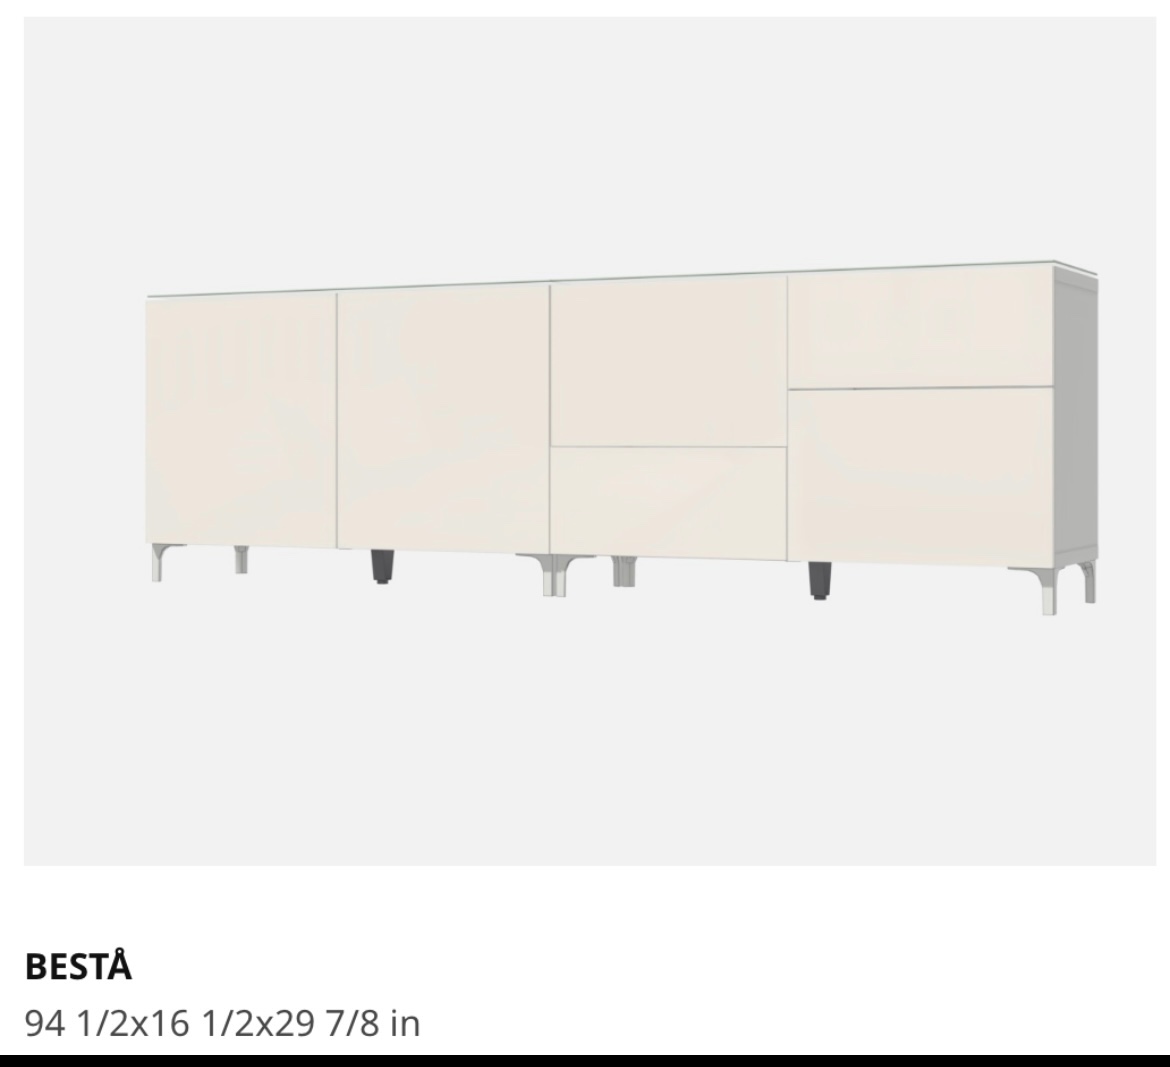 muebles y colchones - Credenza BESTA IKea estantería.